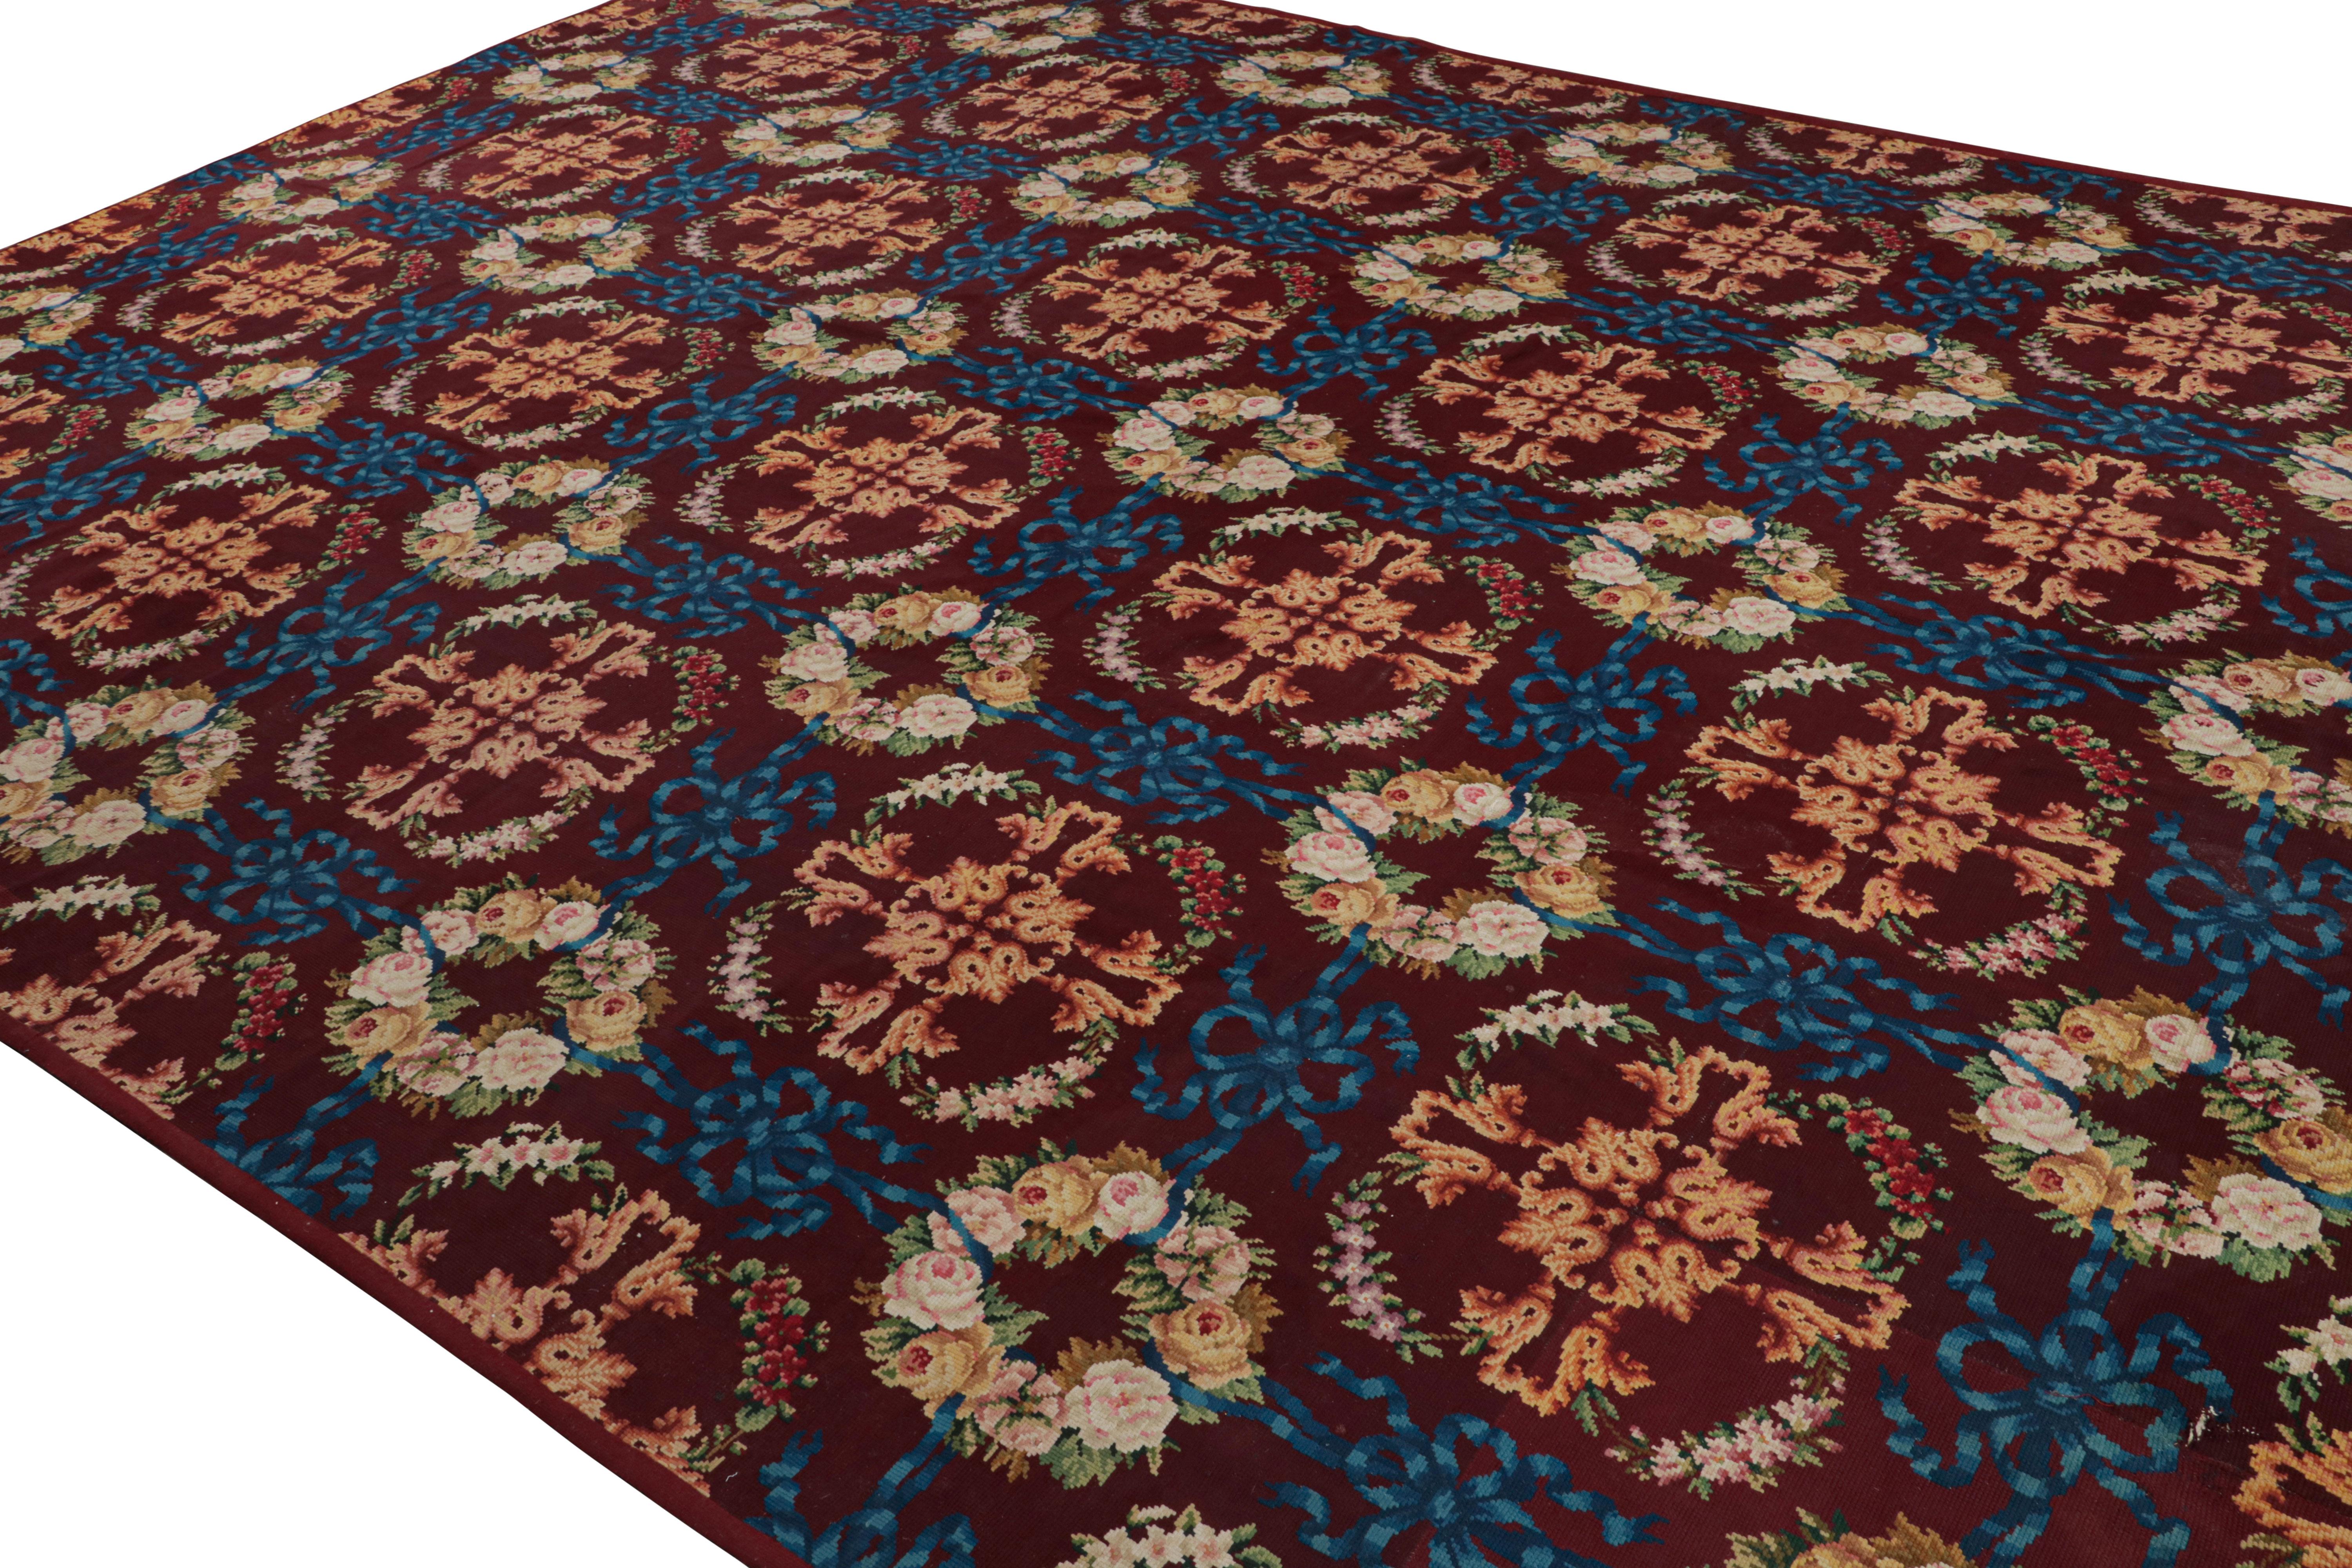 Tissé à la main en laine, ce tapis à l'aiguille anglais antique 12x16 provient d'Angleterre vers 1920-1930 et présente une répétition de motifs floraux. 

Sur le Design : 

Pièce de transition par excellence, ce tapis à l'aiguille anglais ancien